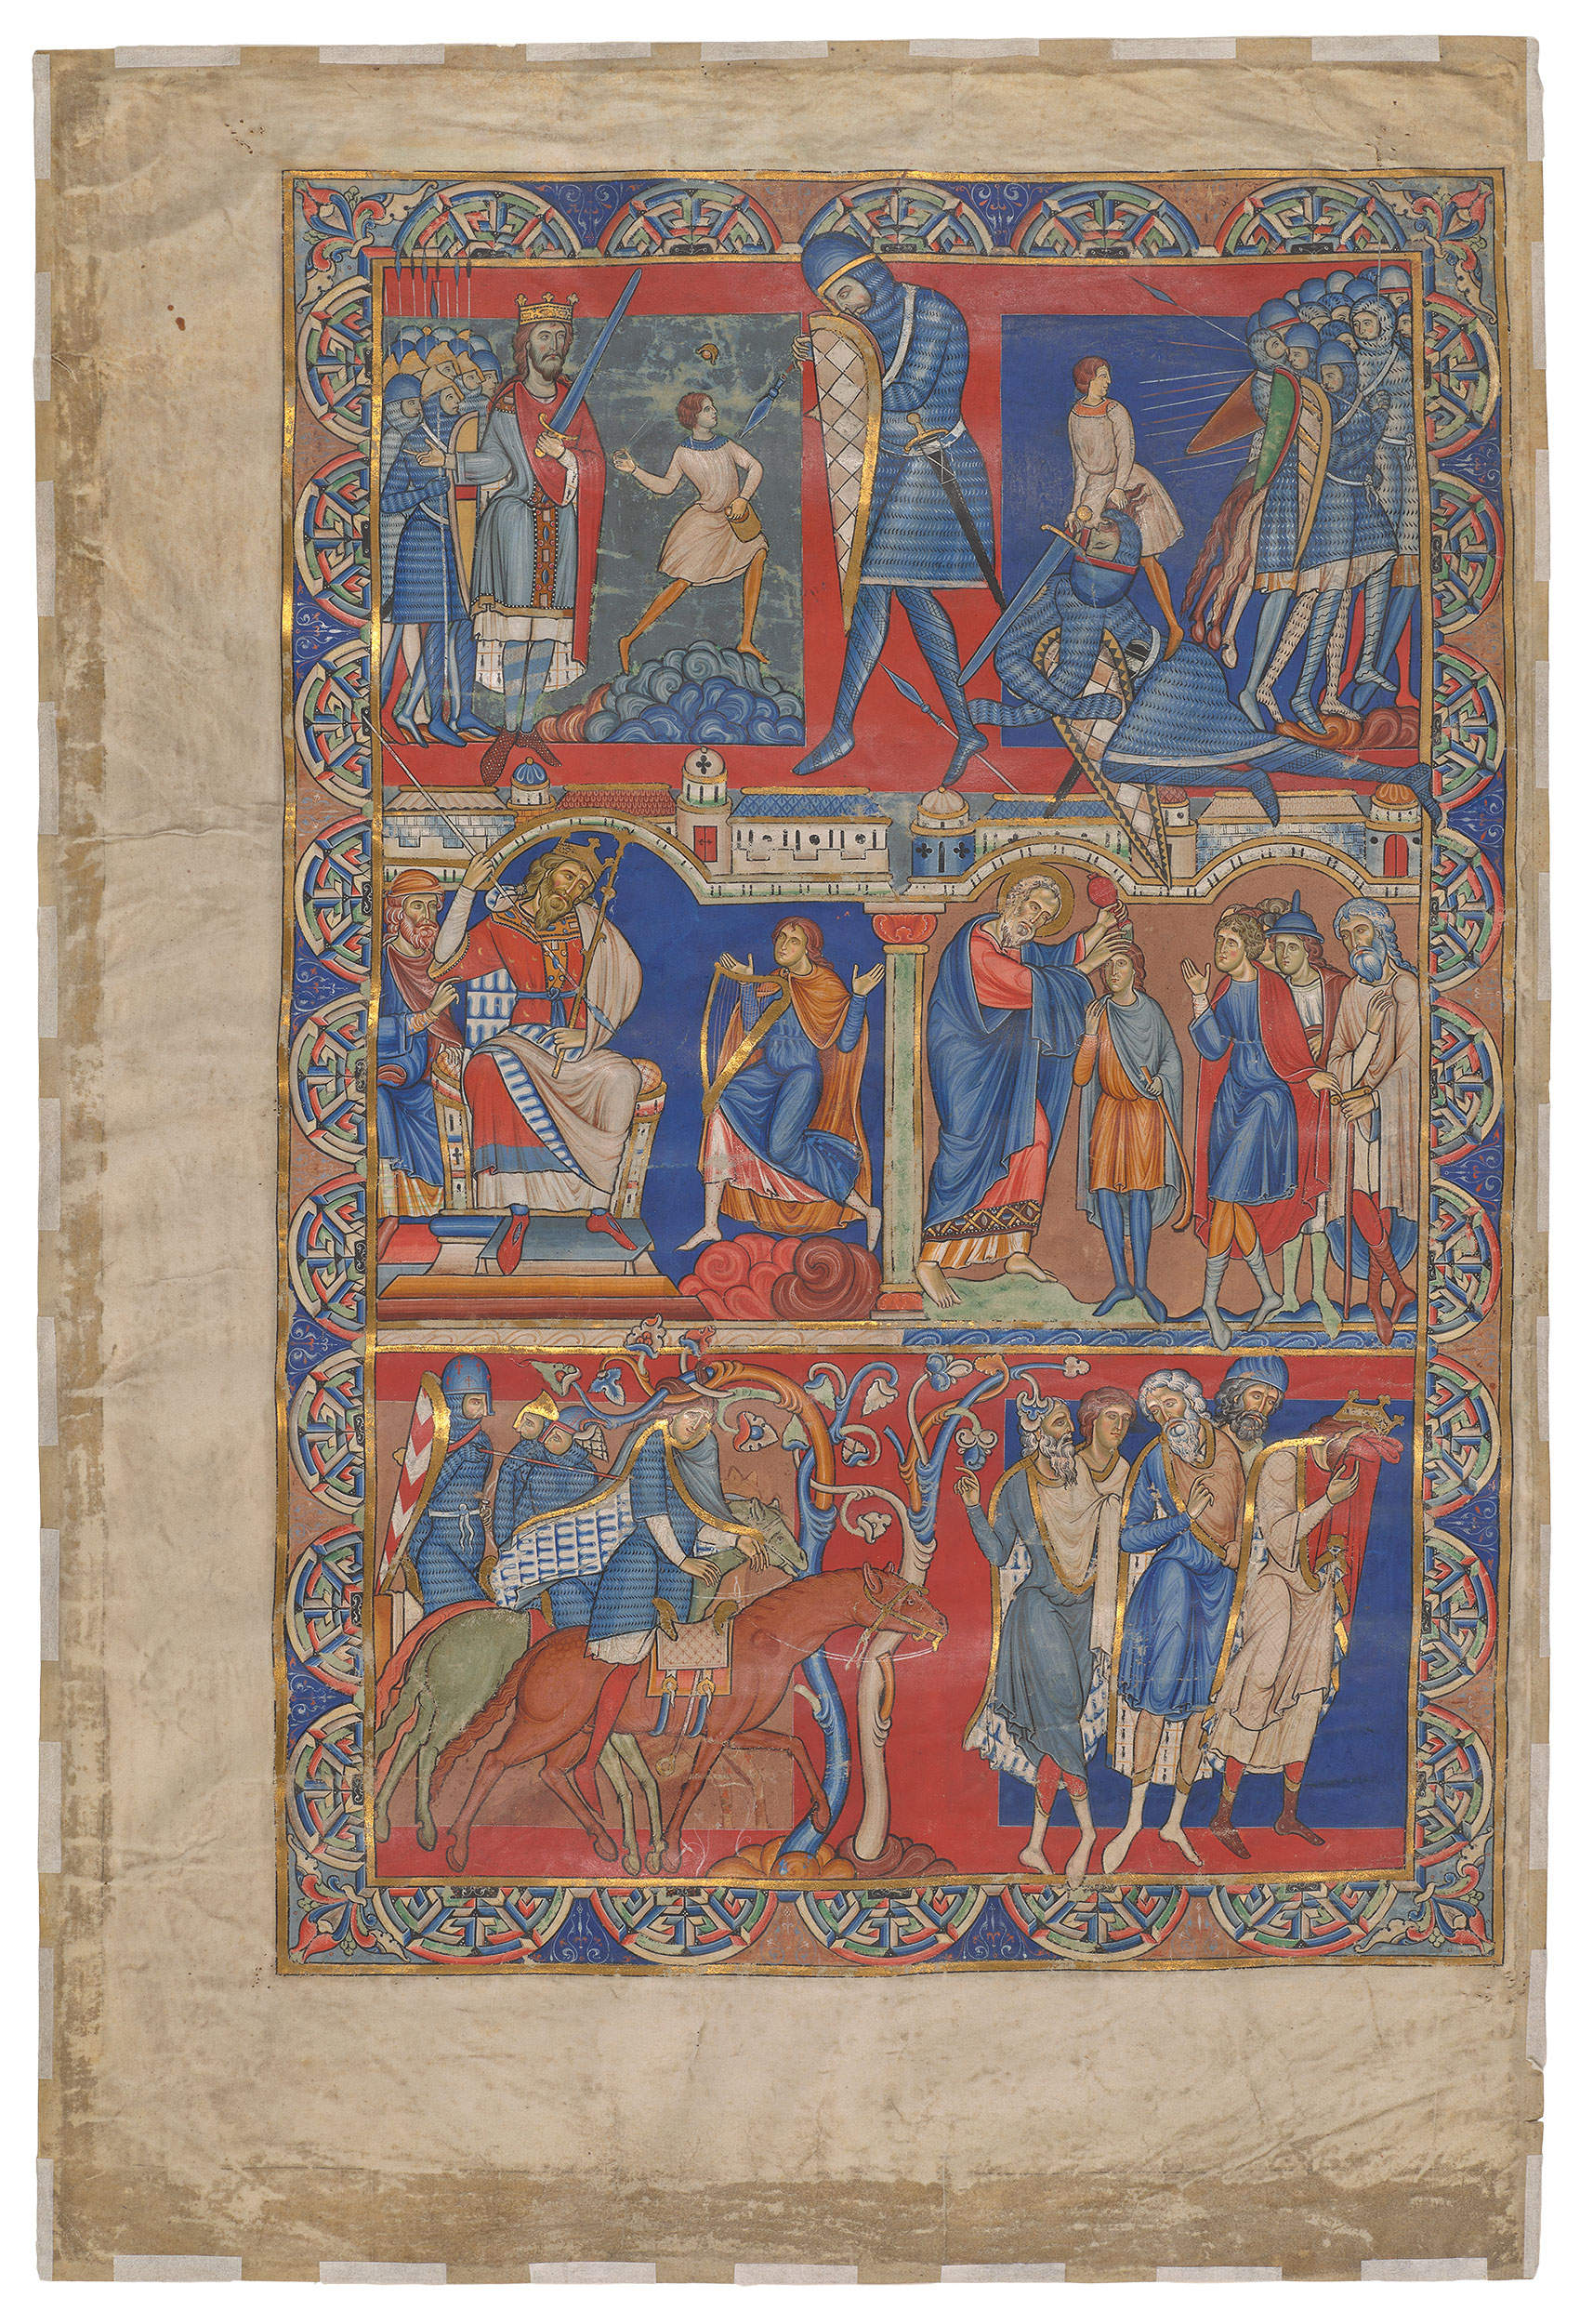 溫徹斯特聖經中的撒母耳記單頁 by Unknown Artist - c. 1160 – 1180 - 580 x 390 mm 